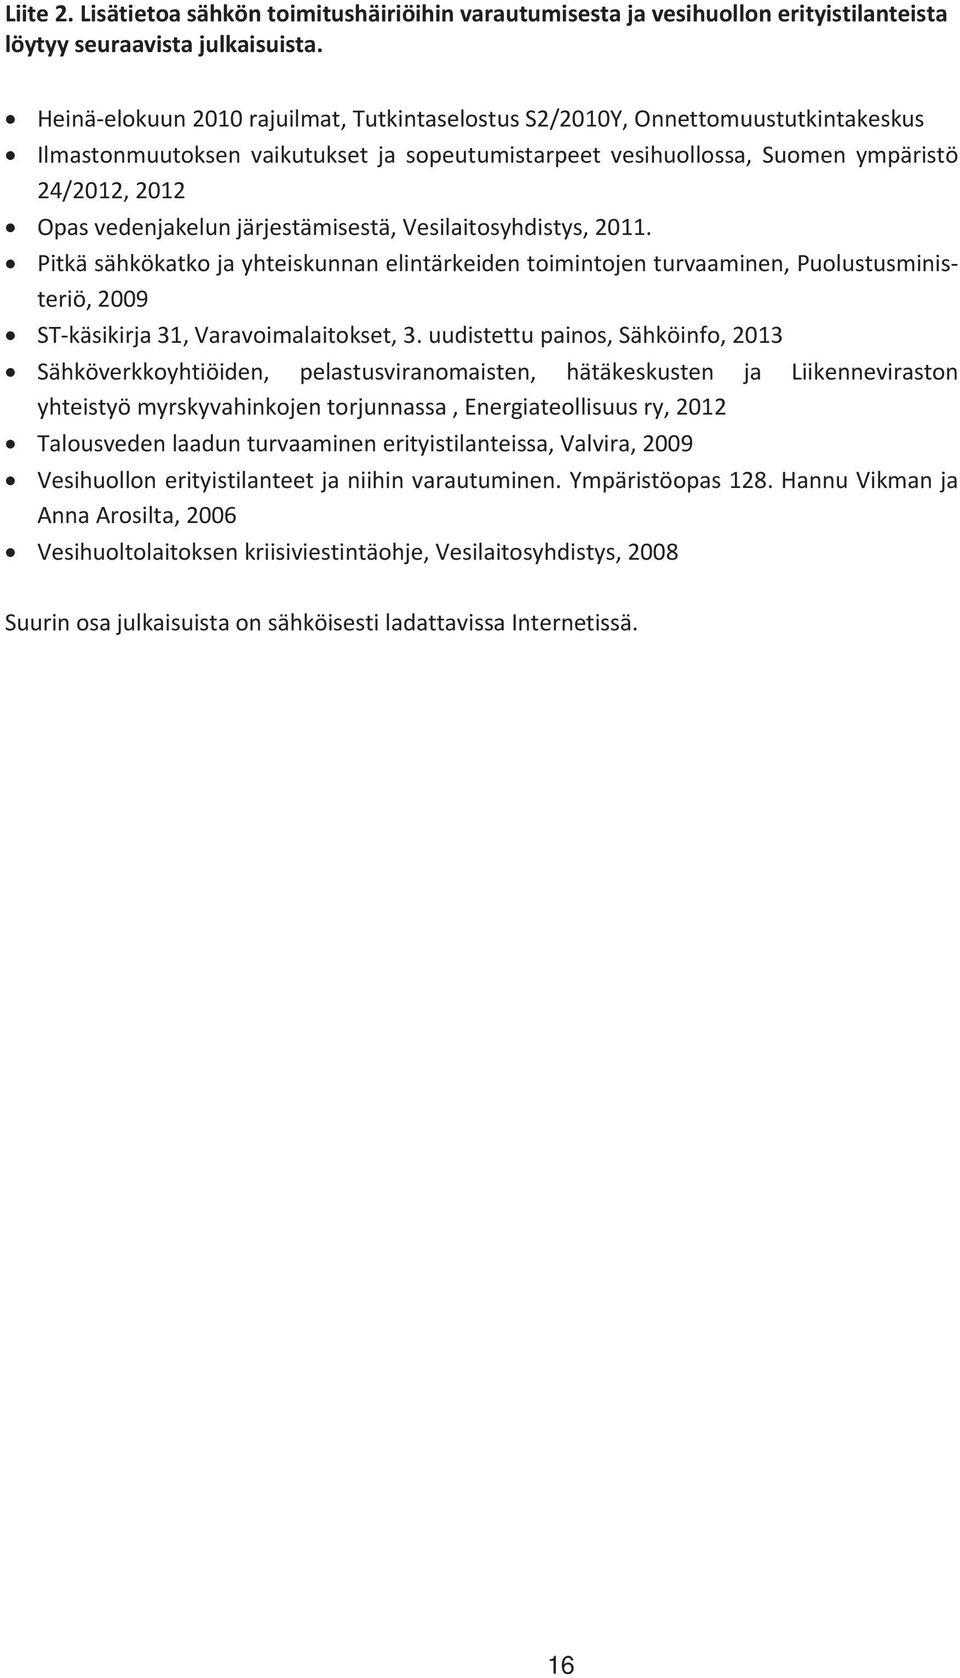 Opasvedenjakelunjärjestämisestä,Vesilaitosyhdistys,2011. Pitkäsähkökatkojayhteiskunnanelintärkeidentoimintojenturvaaminen,Puolustusminis teriö,2009 STkäsikirja31,Varavoimalaitokset,3.